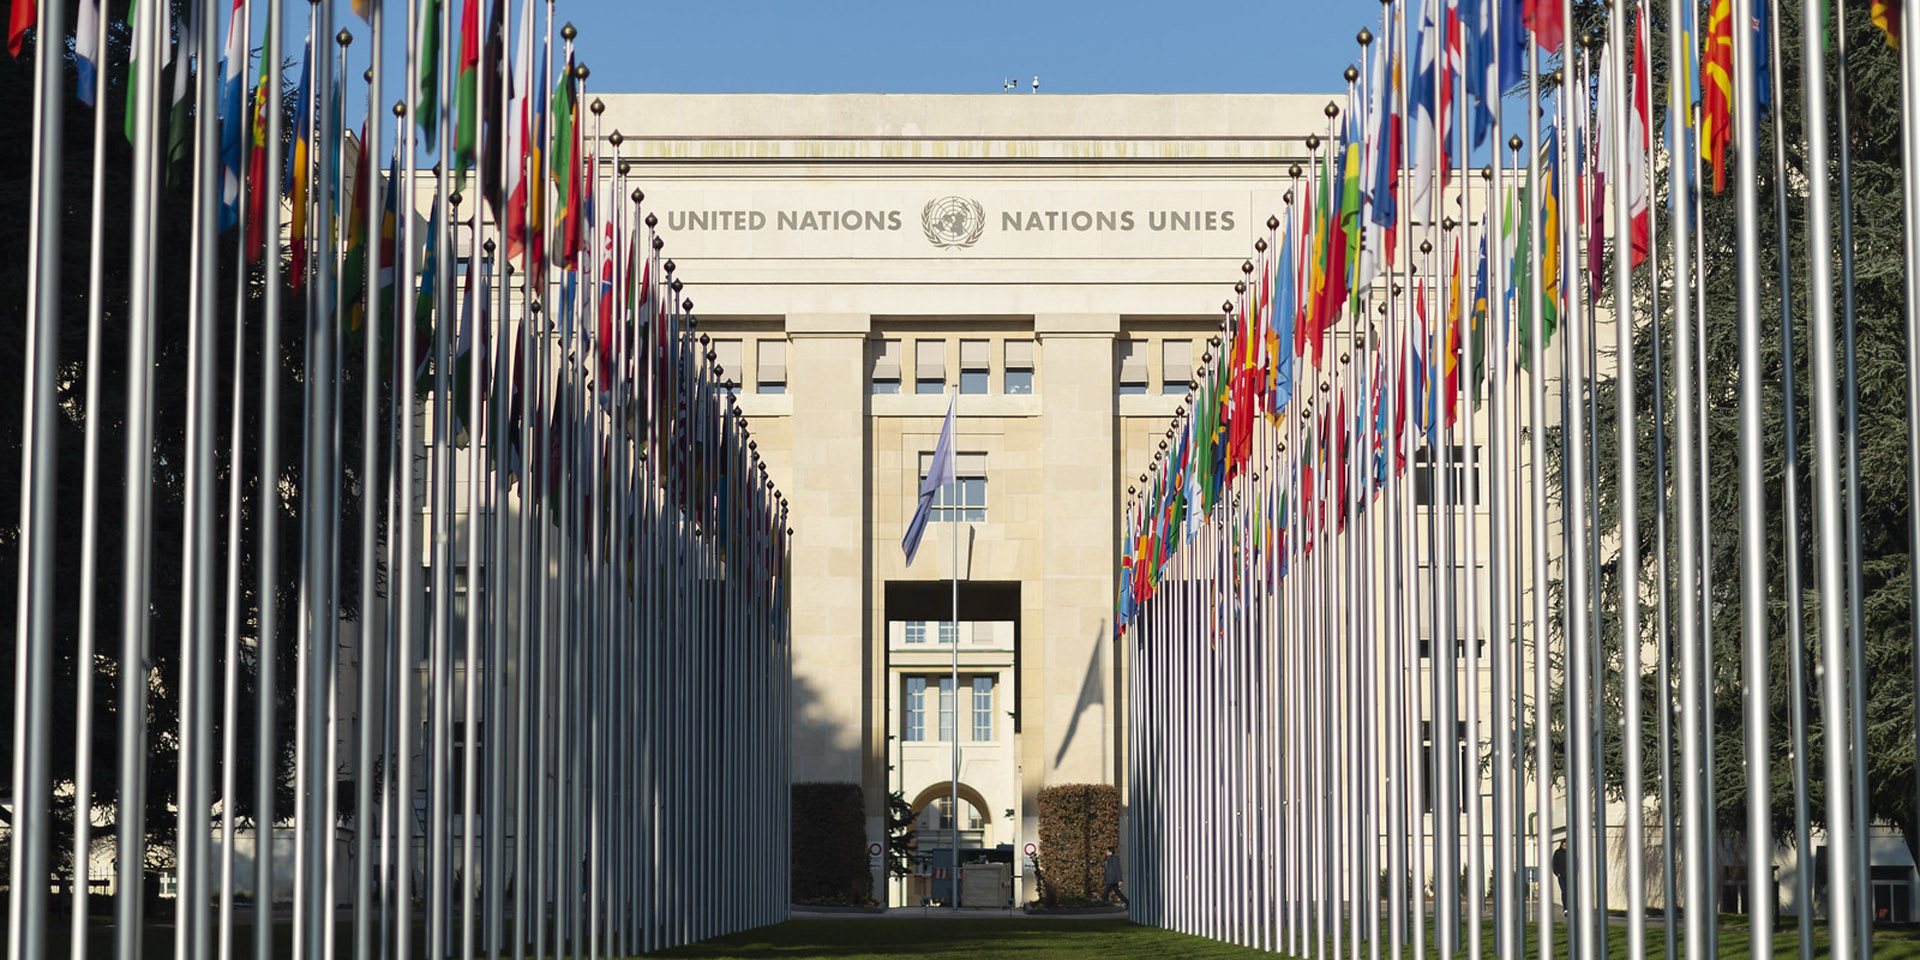 Le bandiere dei Paesi membri dell’ONU sventolano davanti al palazzo delle Nazioni Unite a Ginevra.